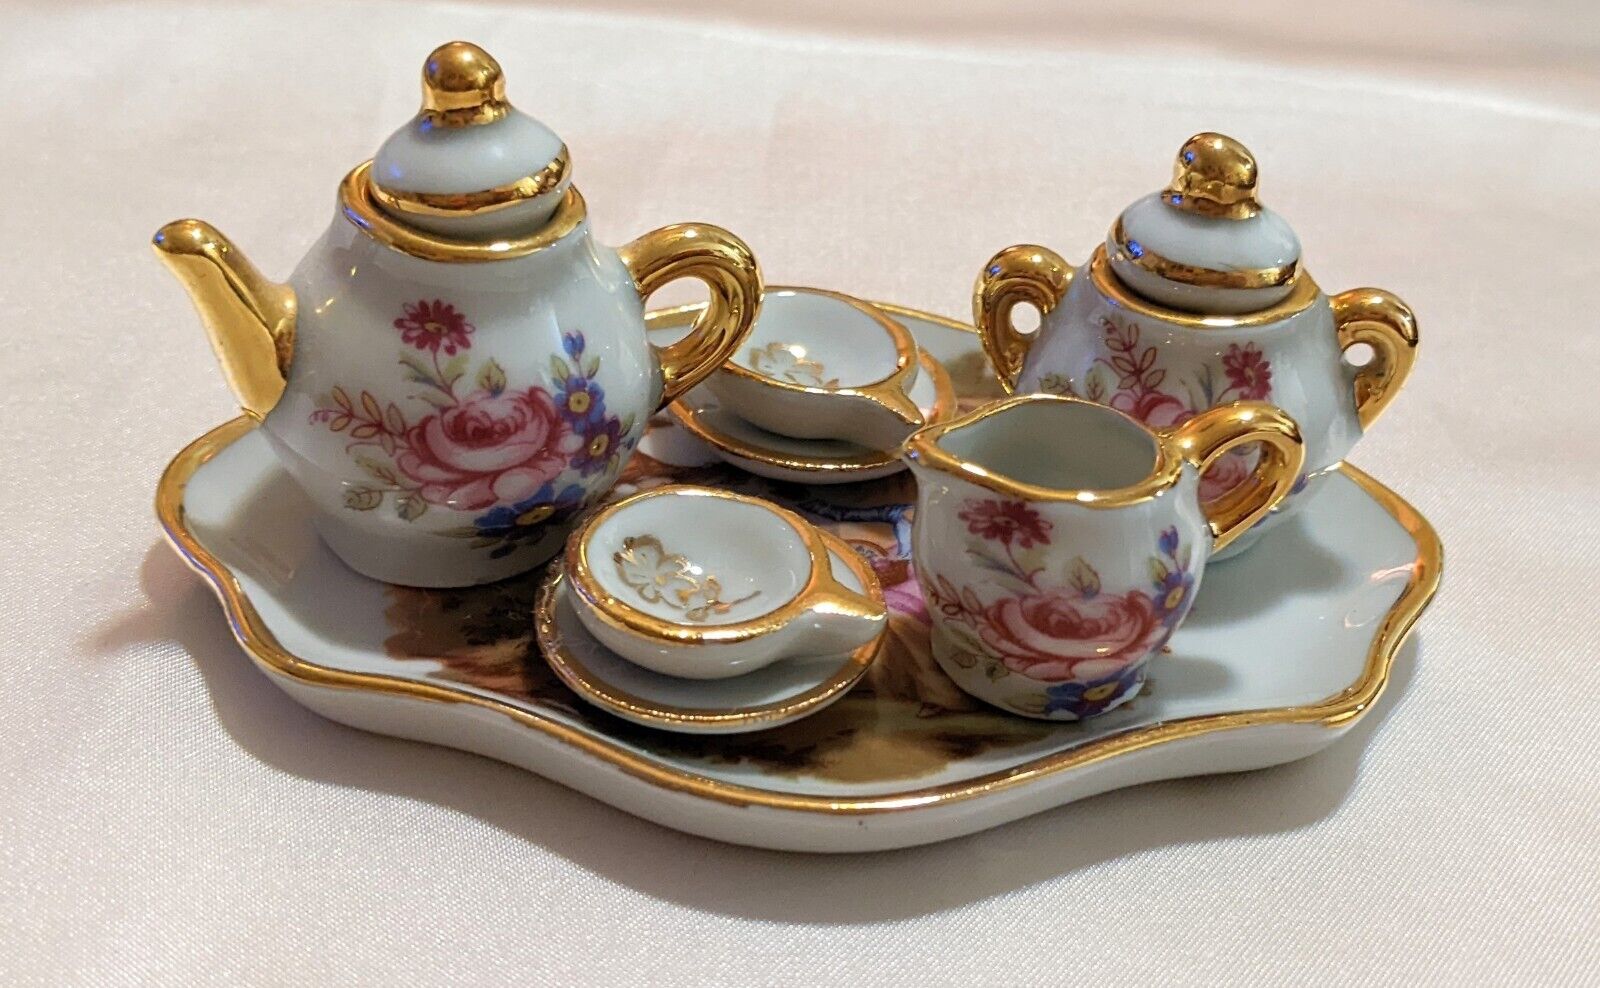 Vintage Limoges France Porcelain Dollhouse Miniature Tea Set Floral w/ Gold Trim